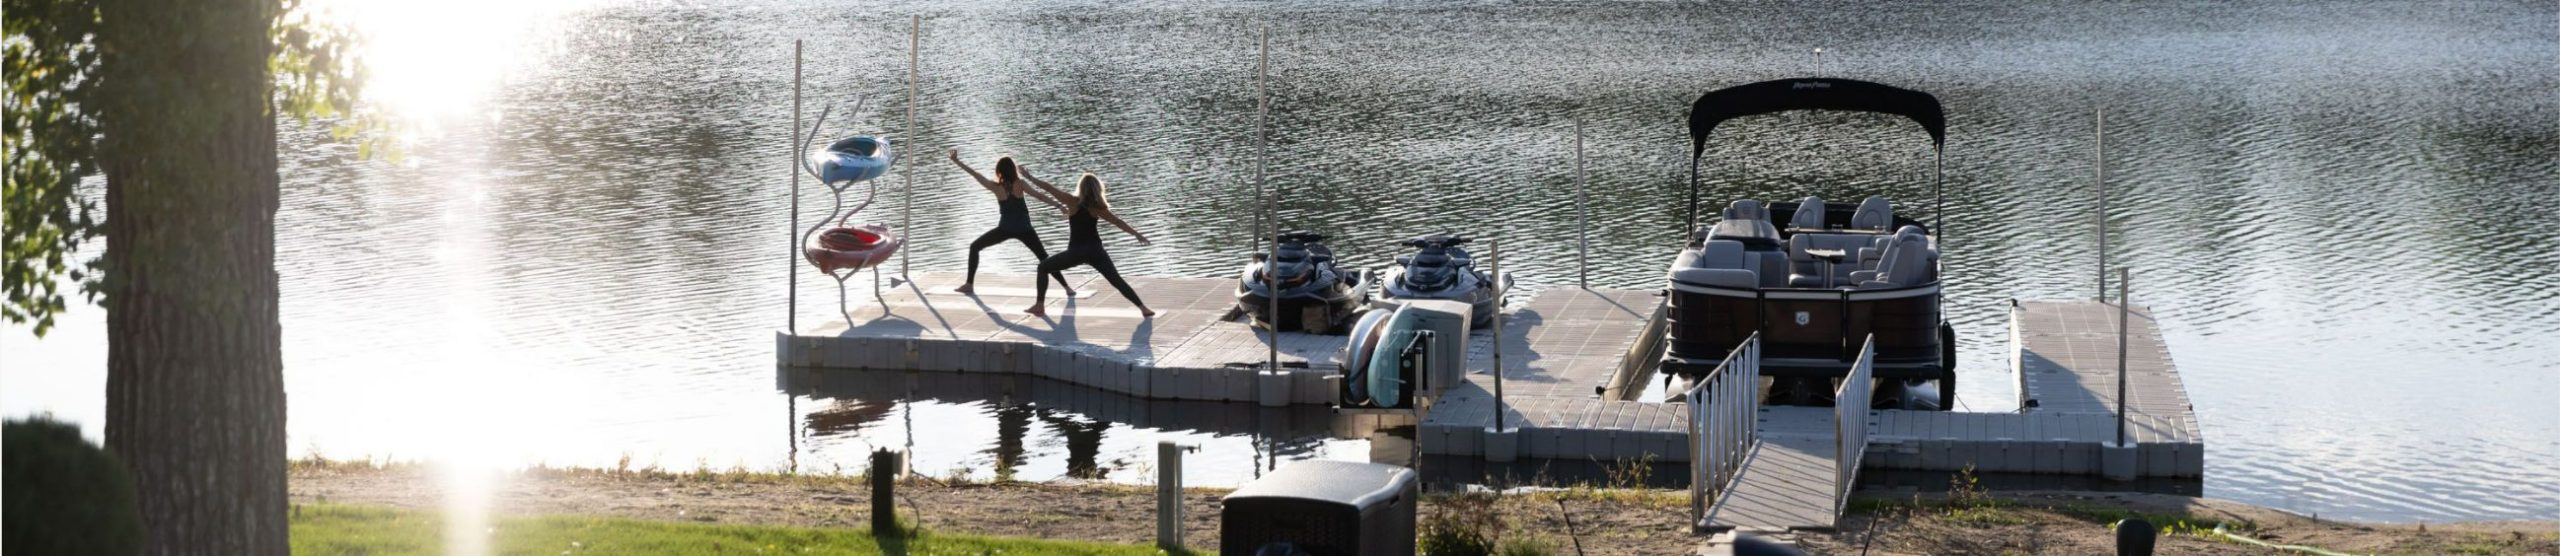 2 kvinner utfører yoga på båthavnen